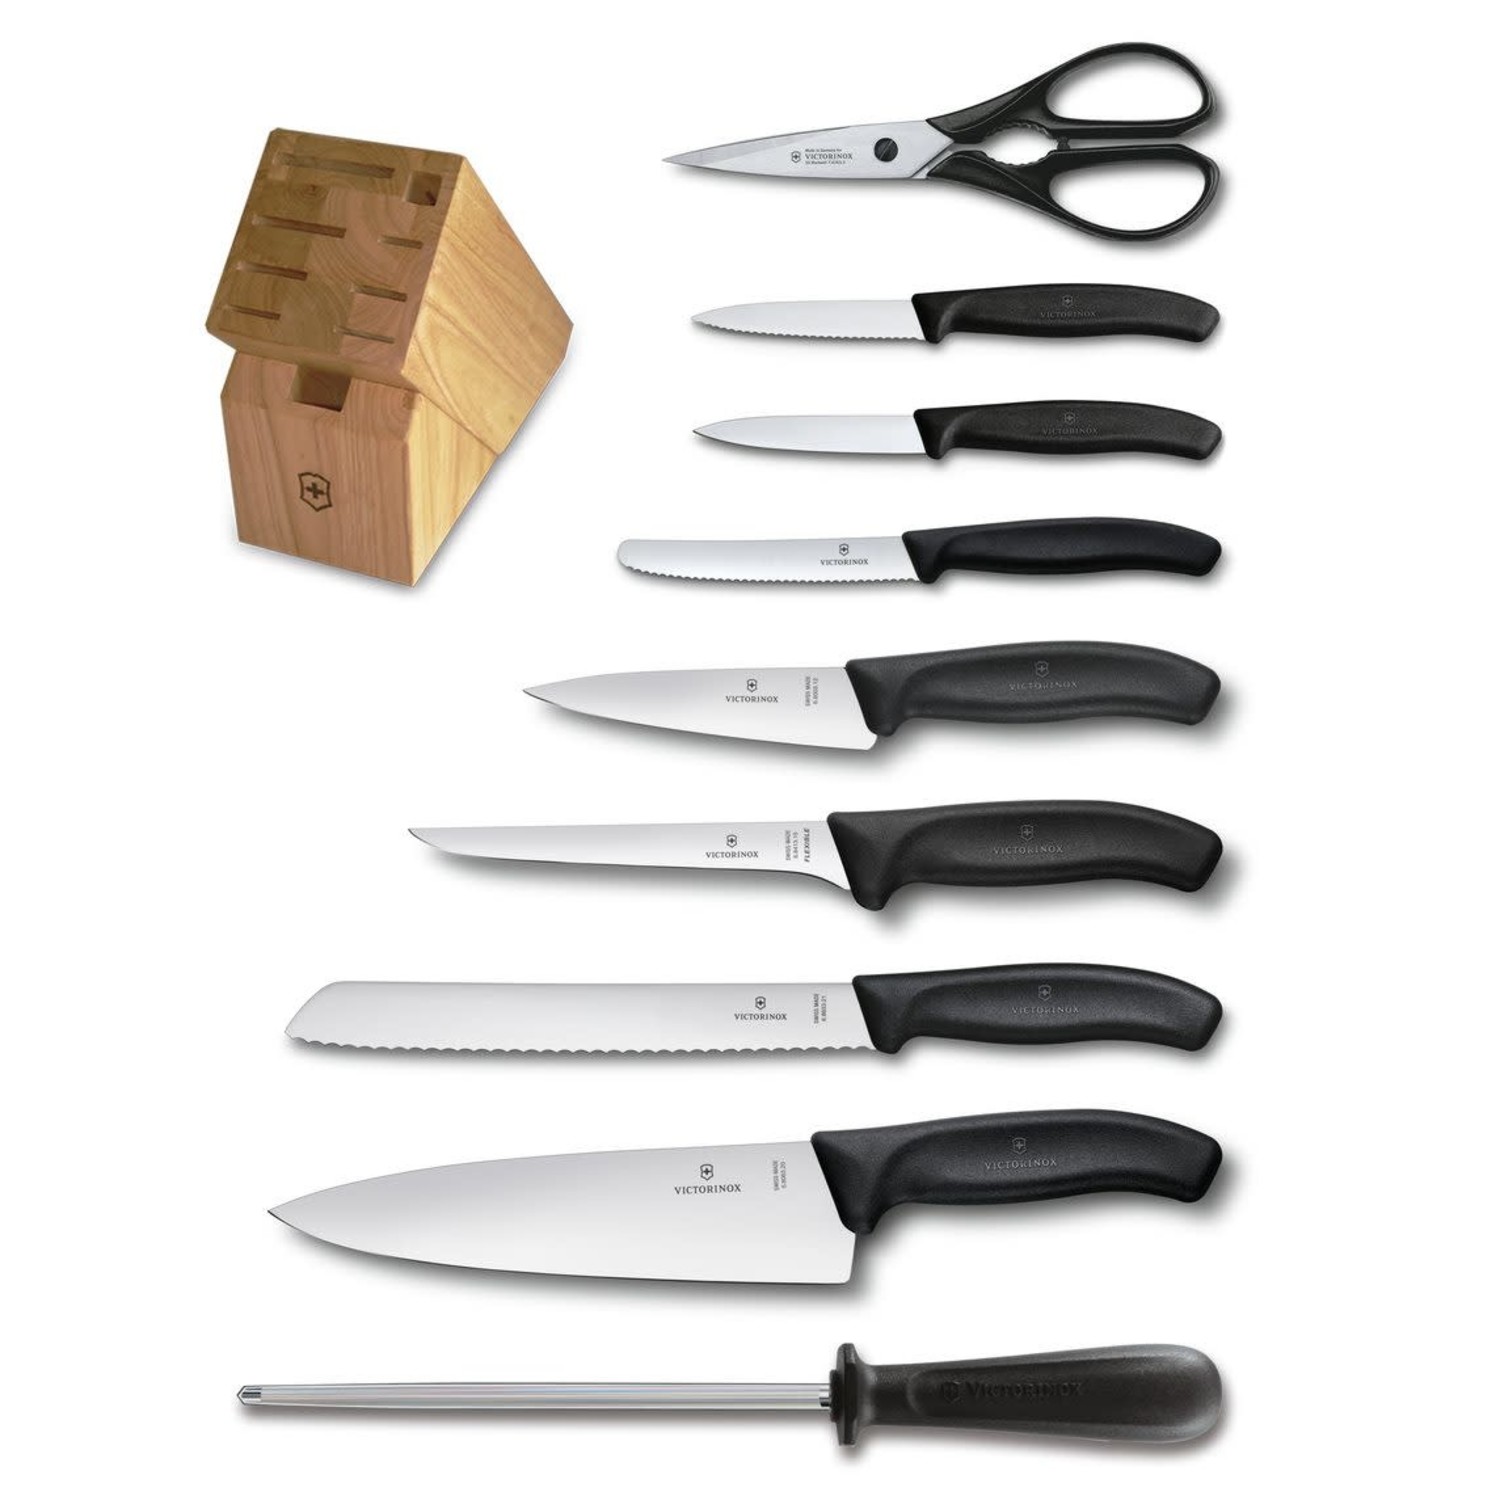 https://cdn.shoplightspeed.com/shops/633447/files/48901604/1500x4000x3/10-piece-swiss-classic-knife-block-set.jpg